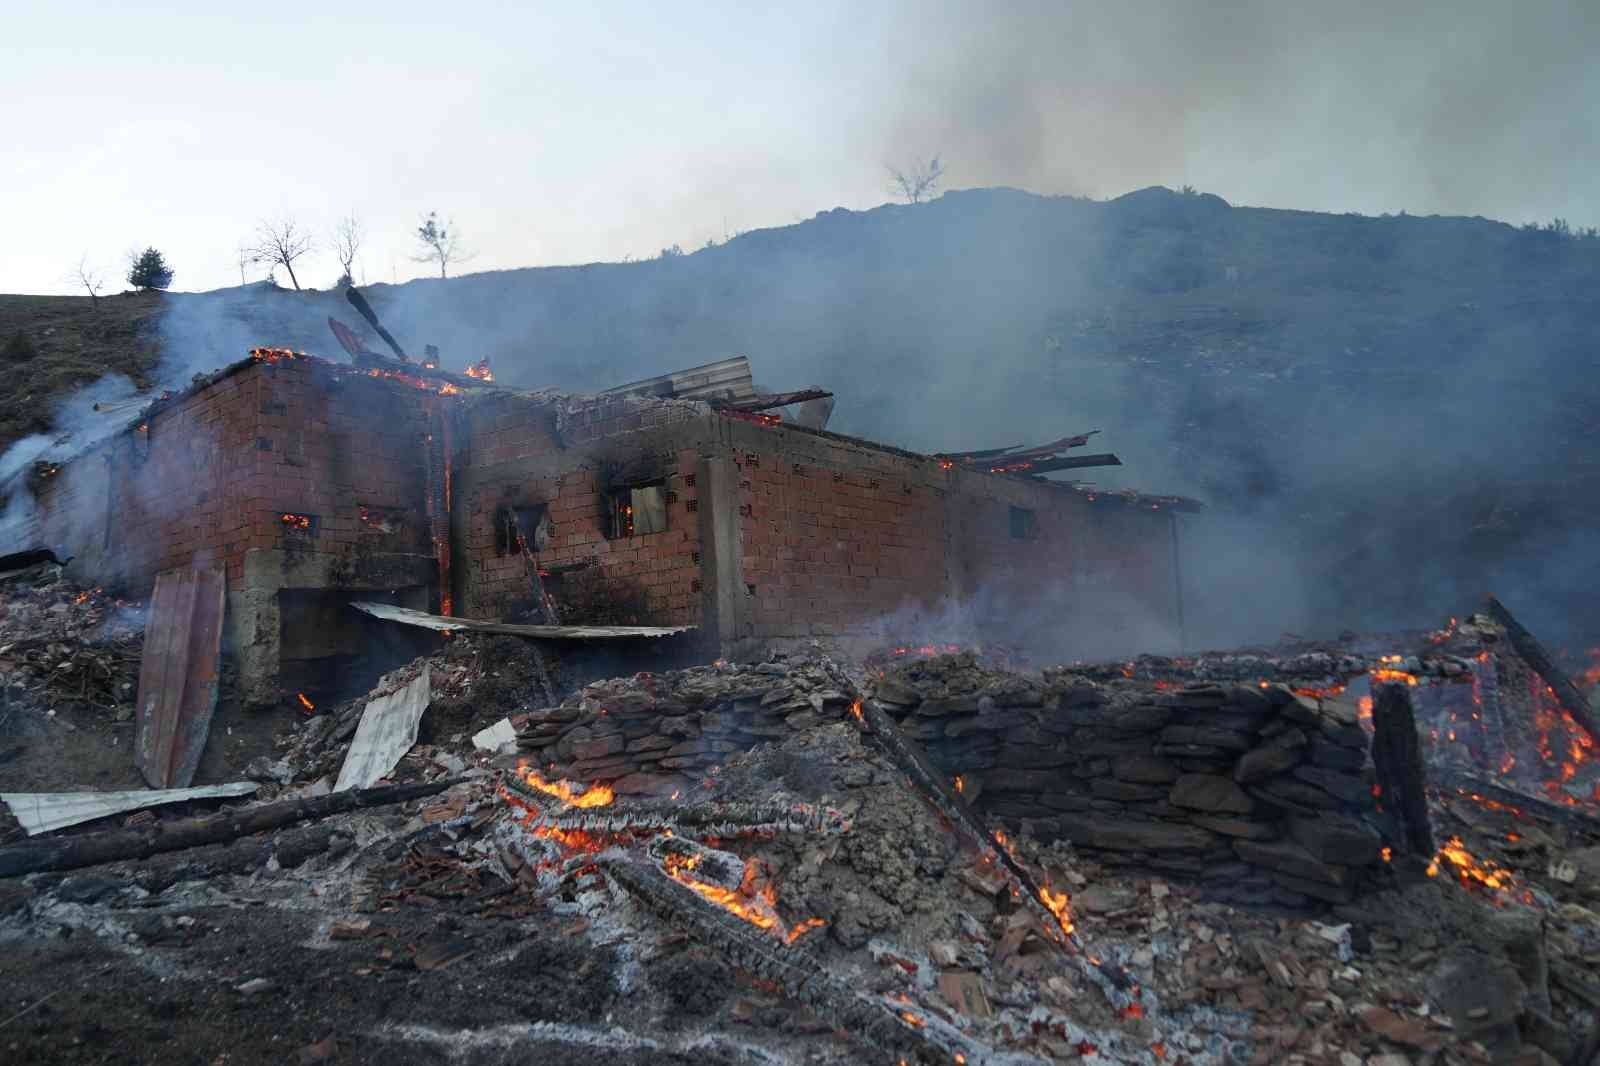 Kastamonu Valisi Çakır: “40 hanenin 15 hanesi yandı, şükür can kaybı yok” #kastamonu